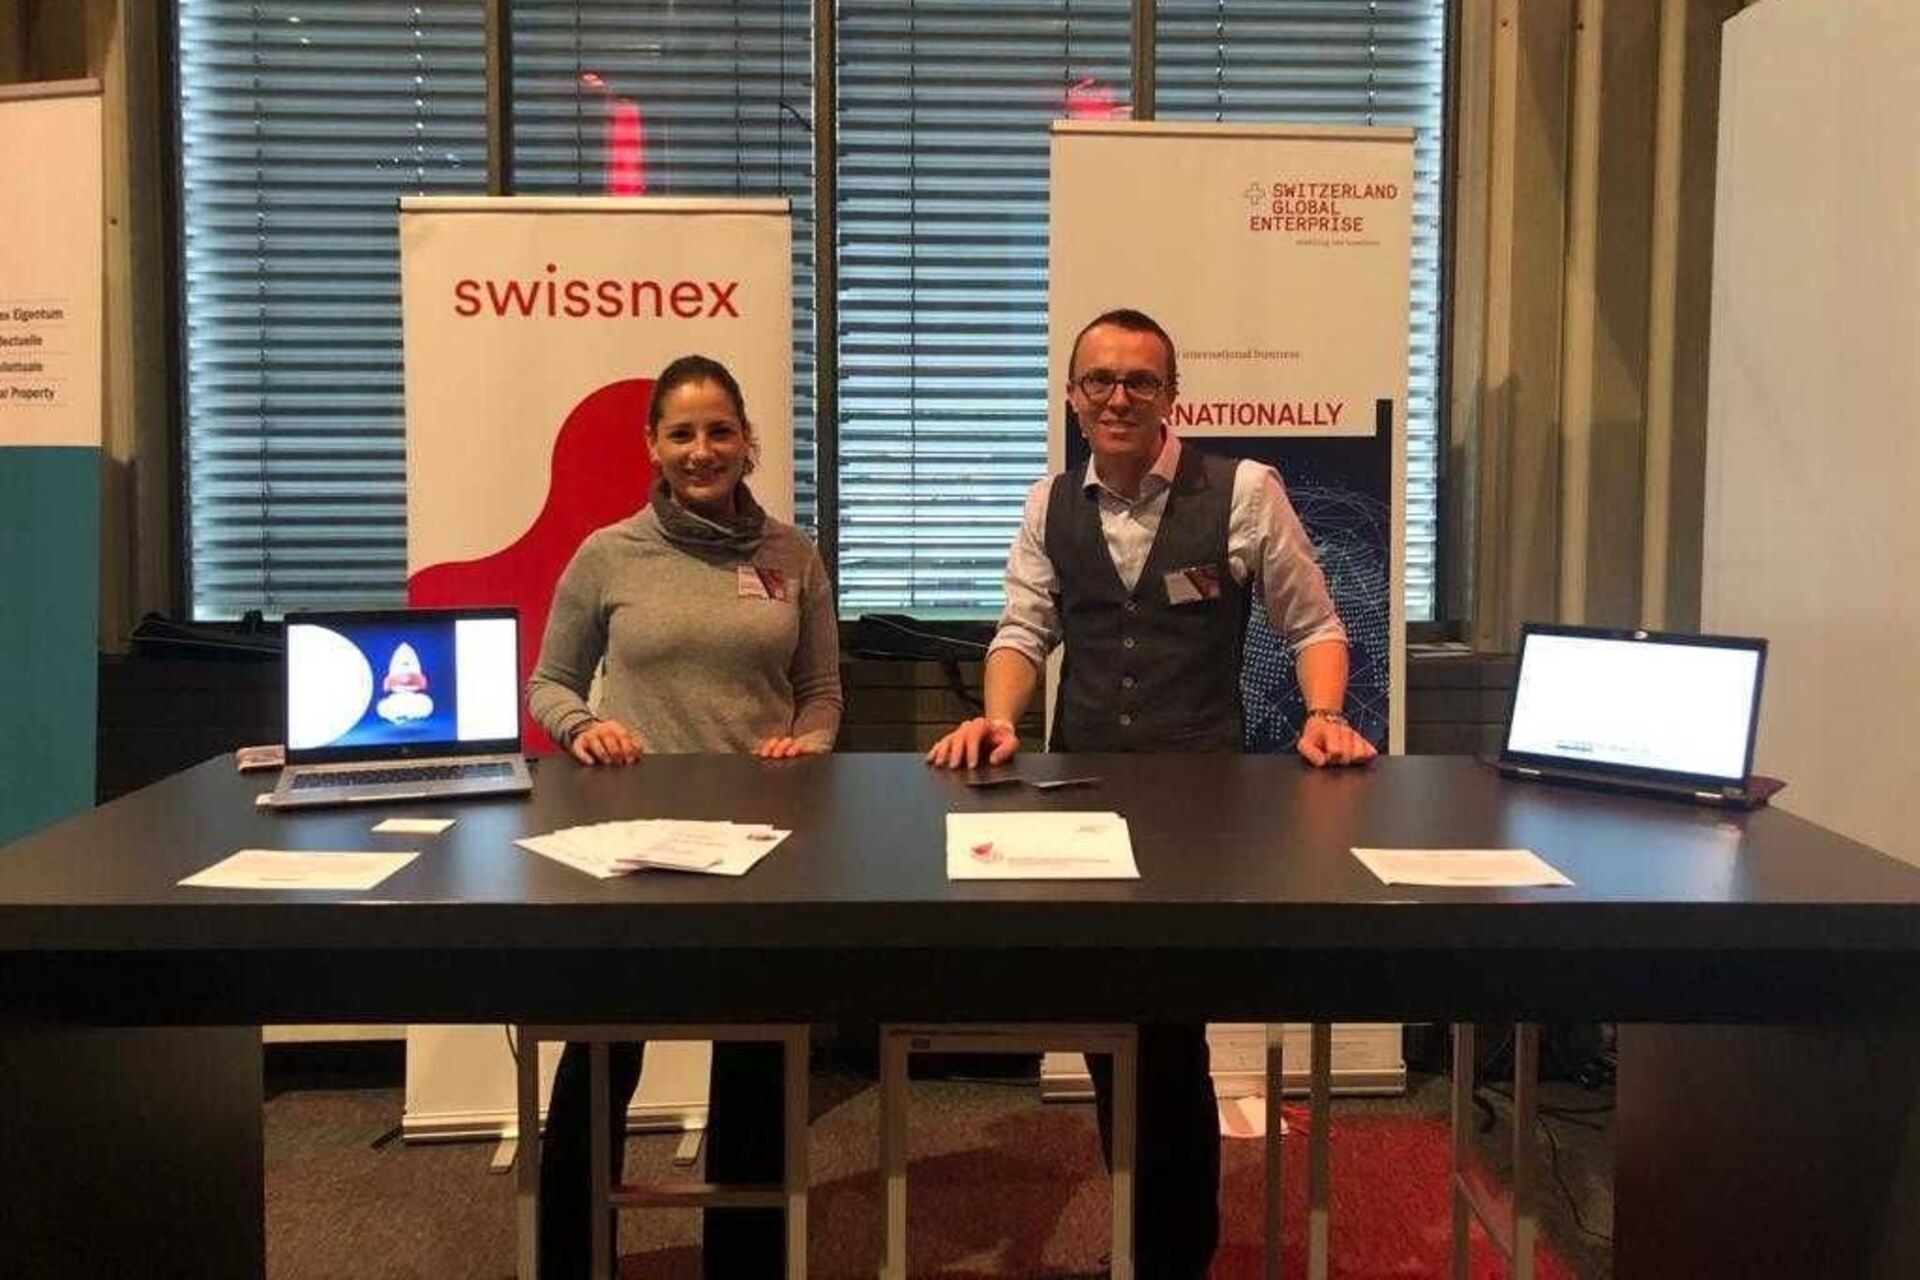 Swissnex: per la Svizzera è importante la collaborazione fra Swissnex e Switzerland Global Enterprise